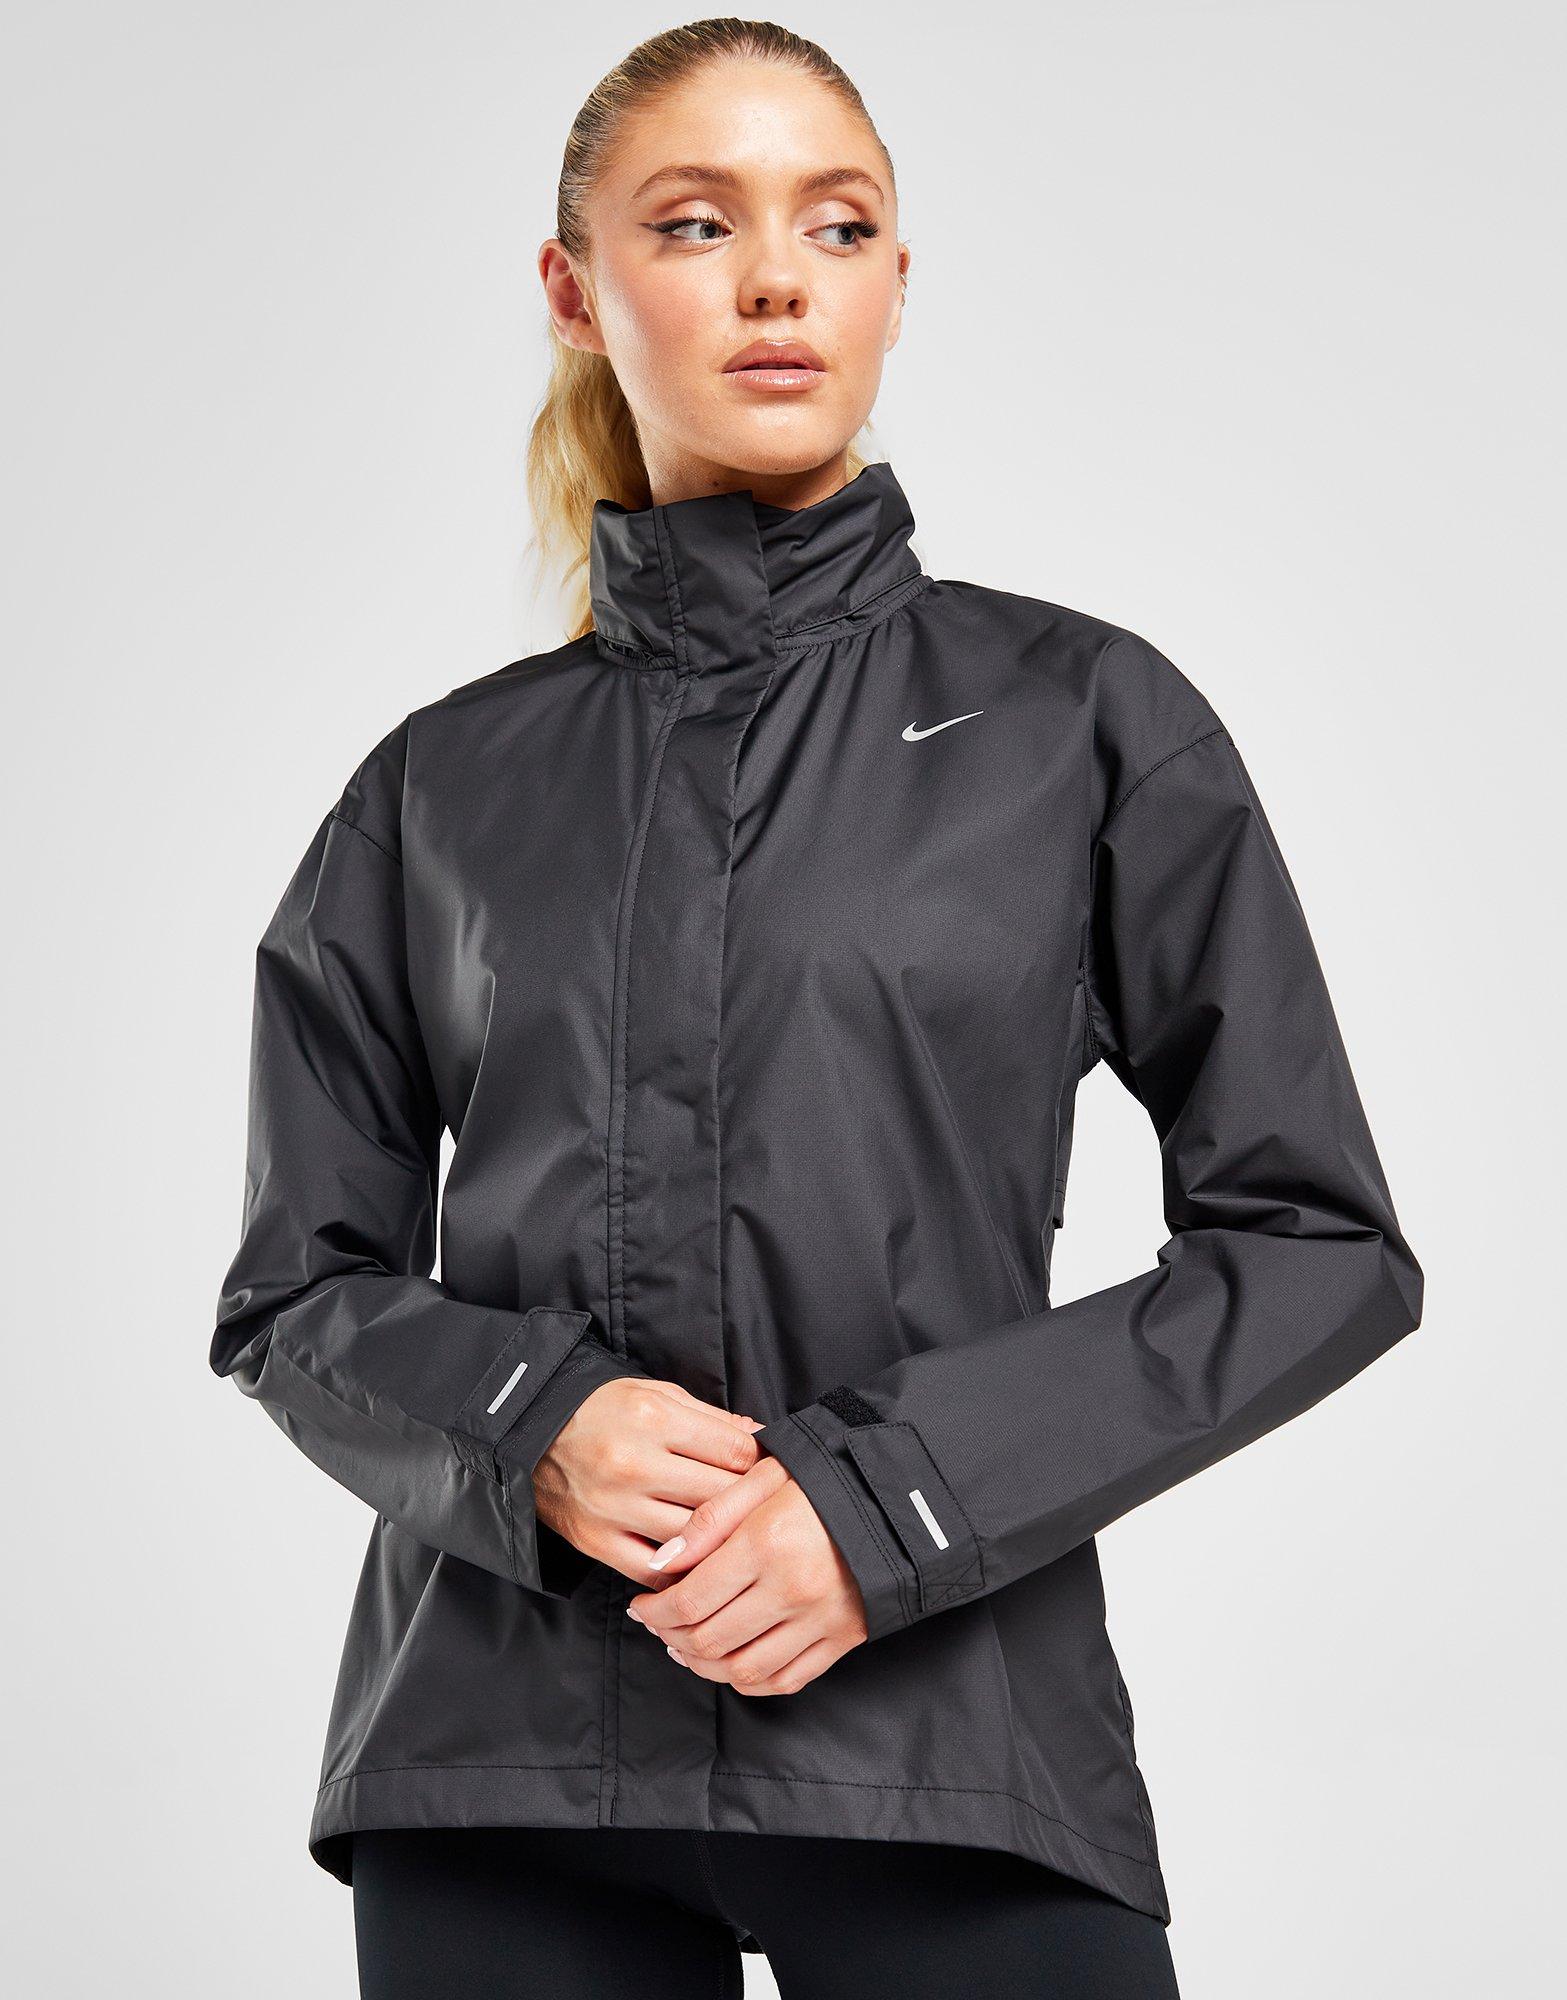 NIKE PLUS SIZE 3X $110 Windrunner Women's Sportswear Running